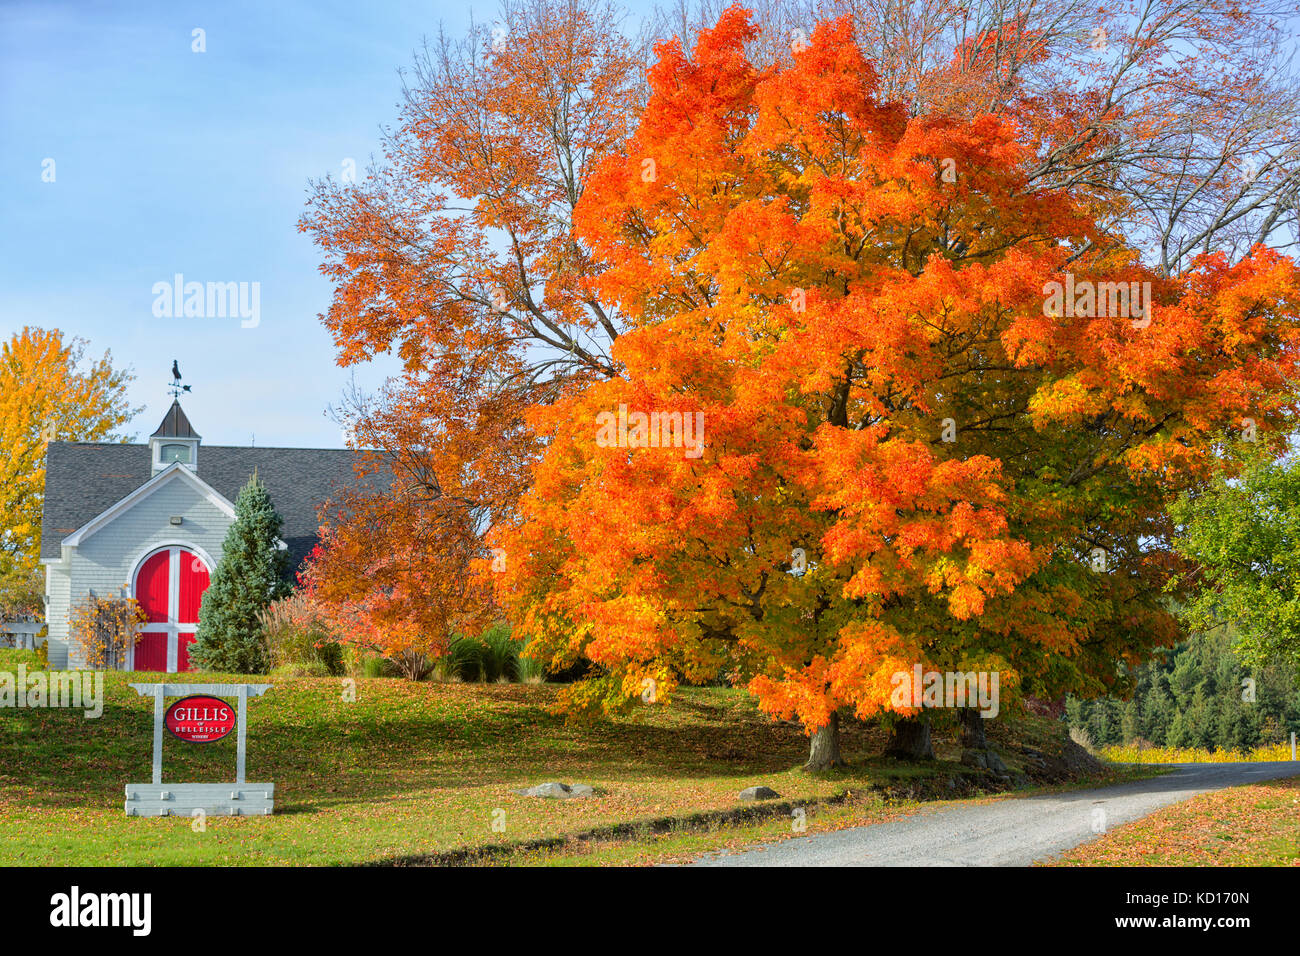 Fall foliage, Gillis Winery, Belleisle, New Brunswick, Canada Stock Photo